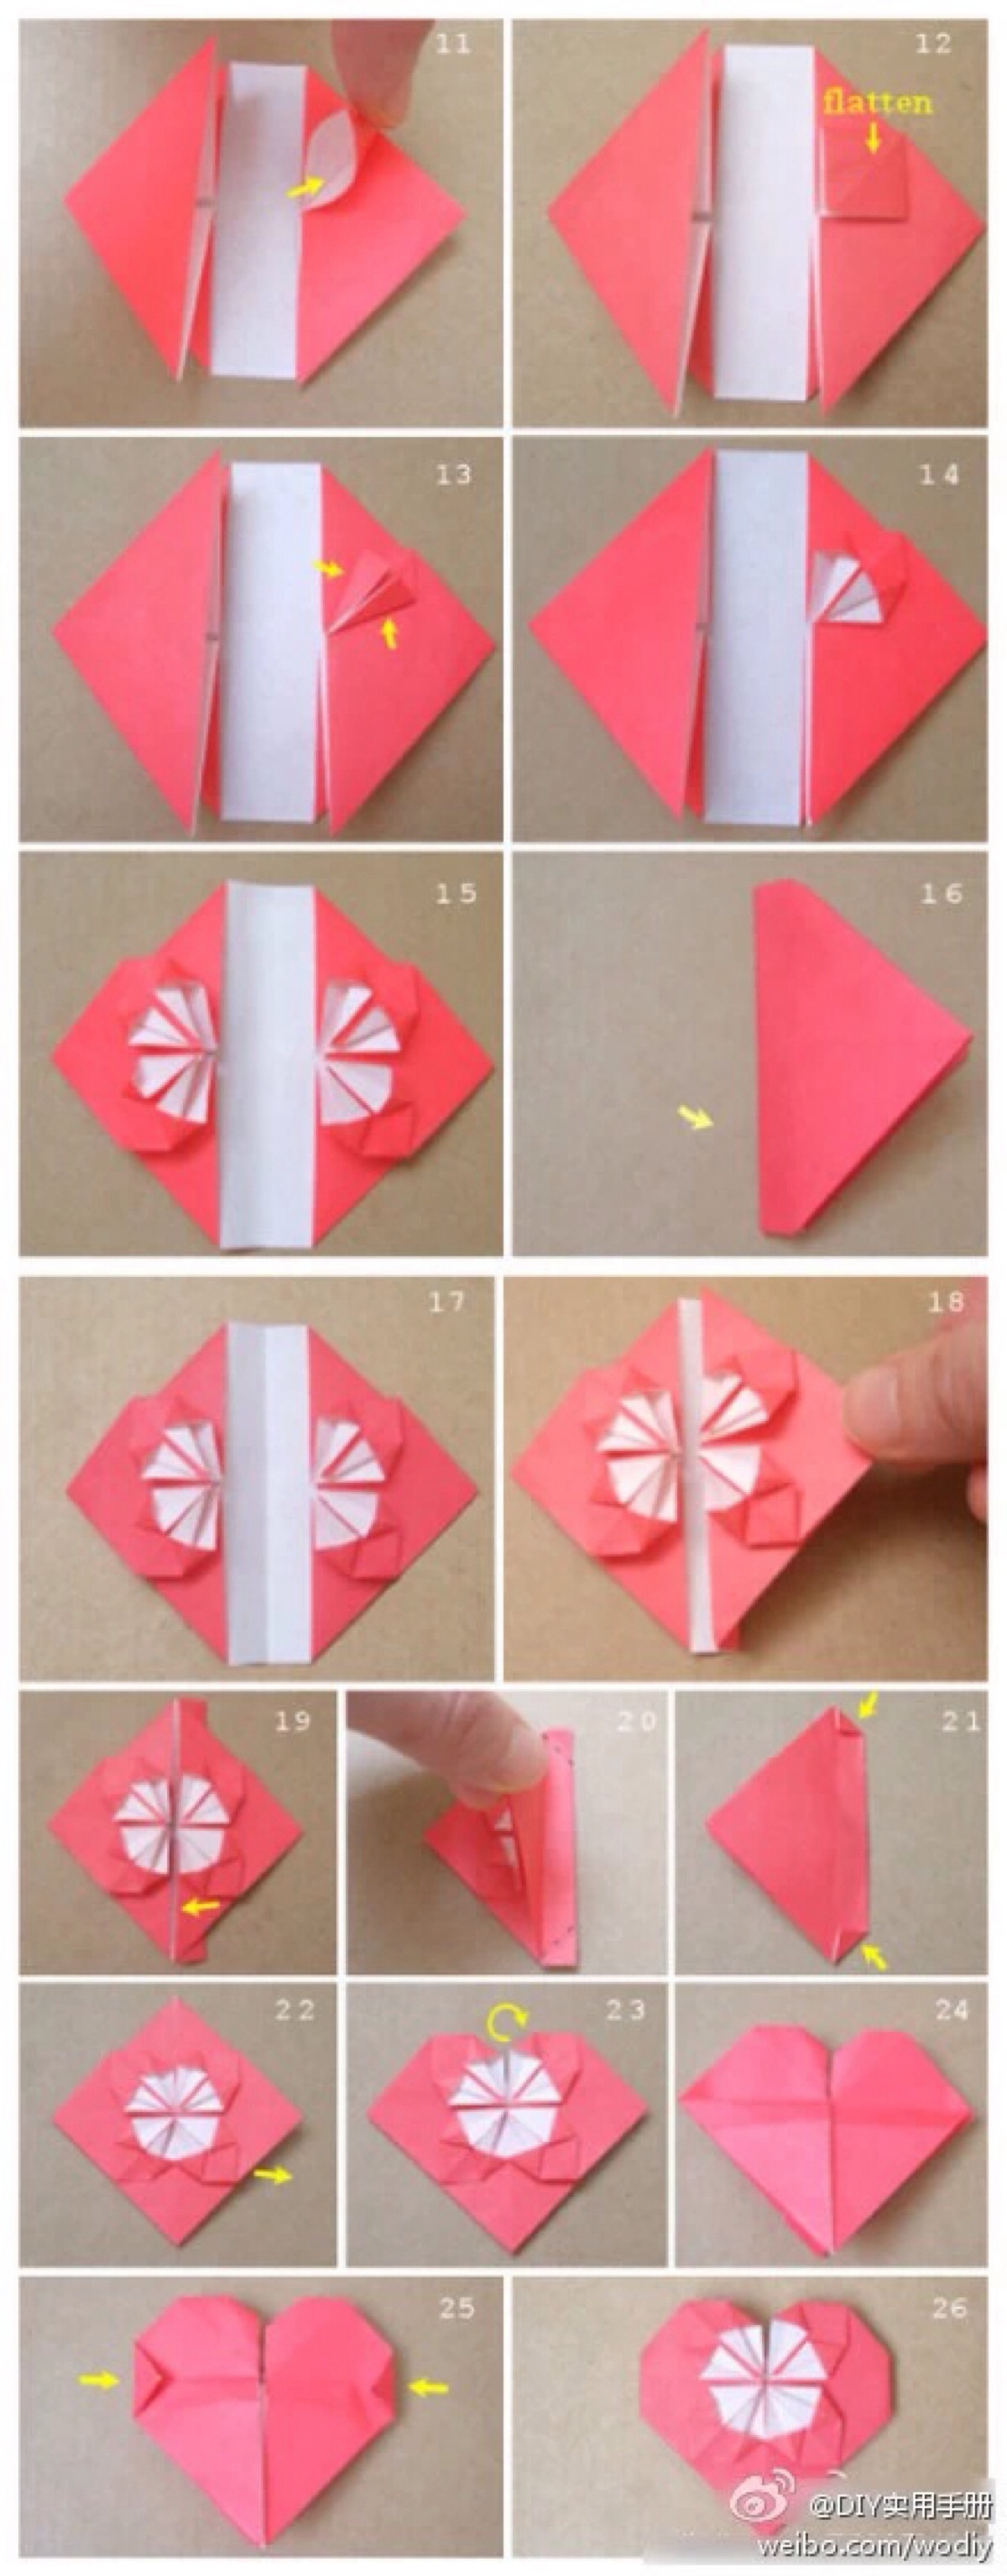 折纸教程 手工折纸爱心教程